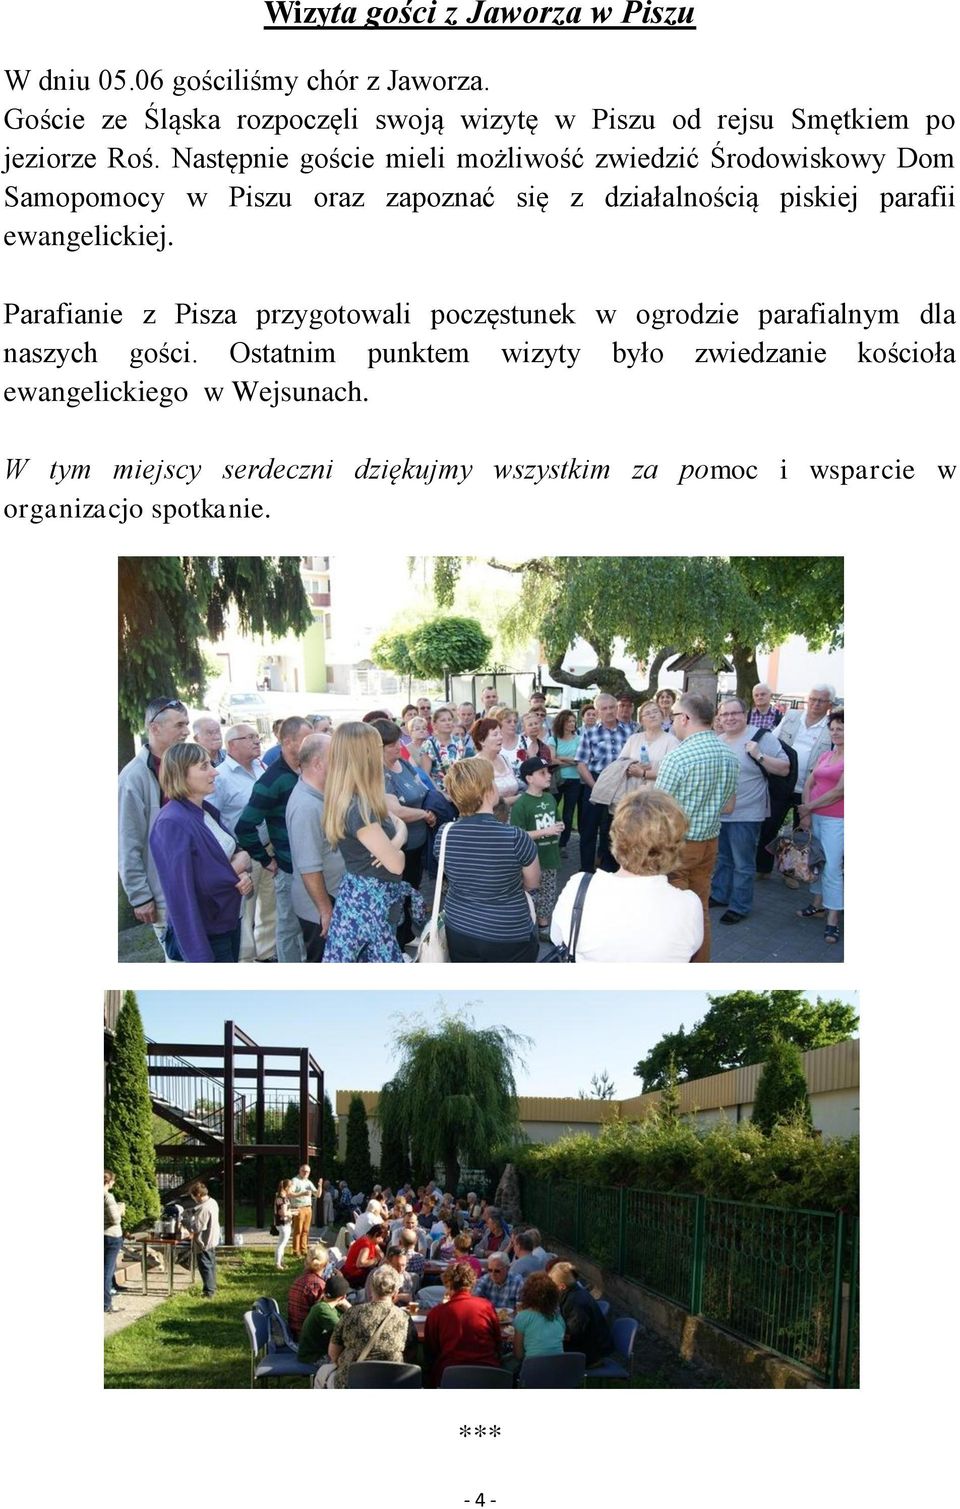 Następnie goście mieli możliwość zwiedzić Środowiskowy Dom Samopomocy w Piszu oraz zapoznać się z działalnością piskiej parafii